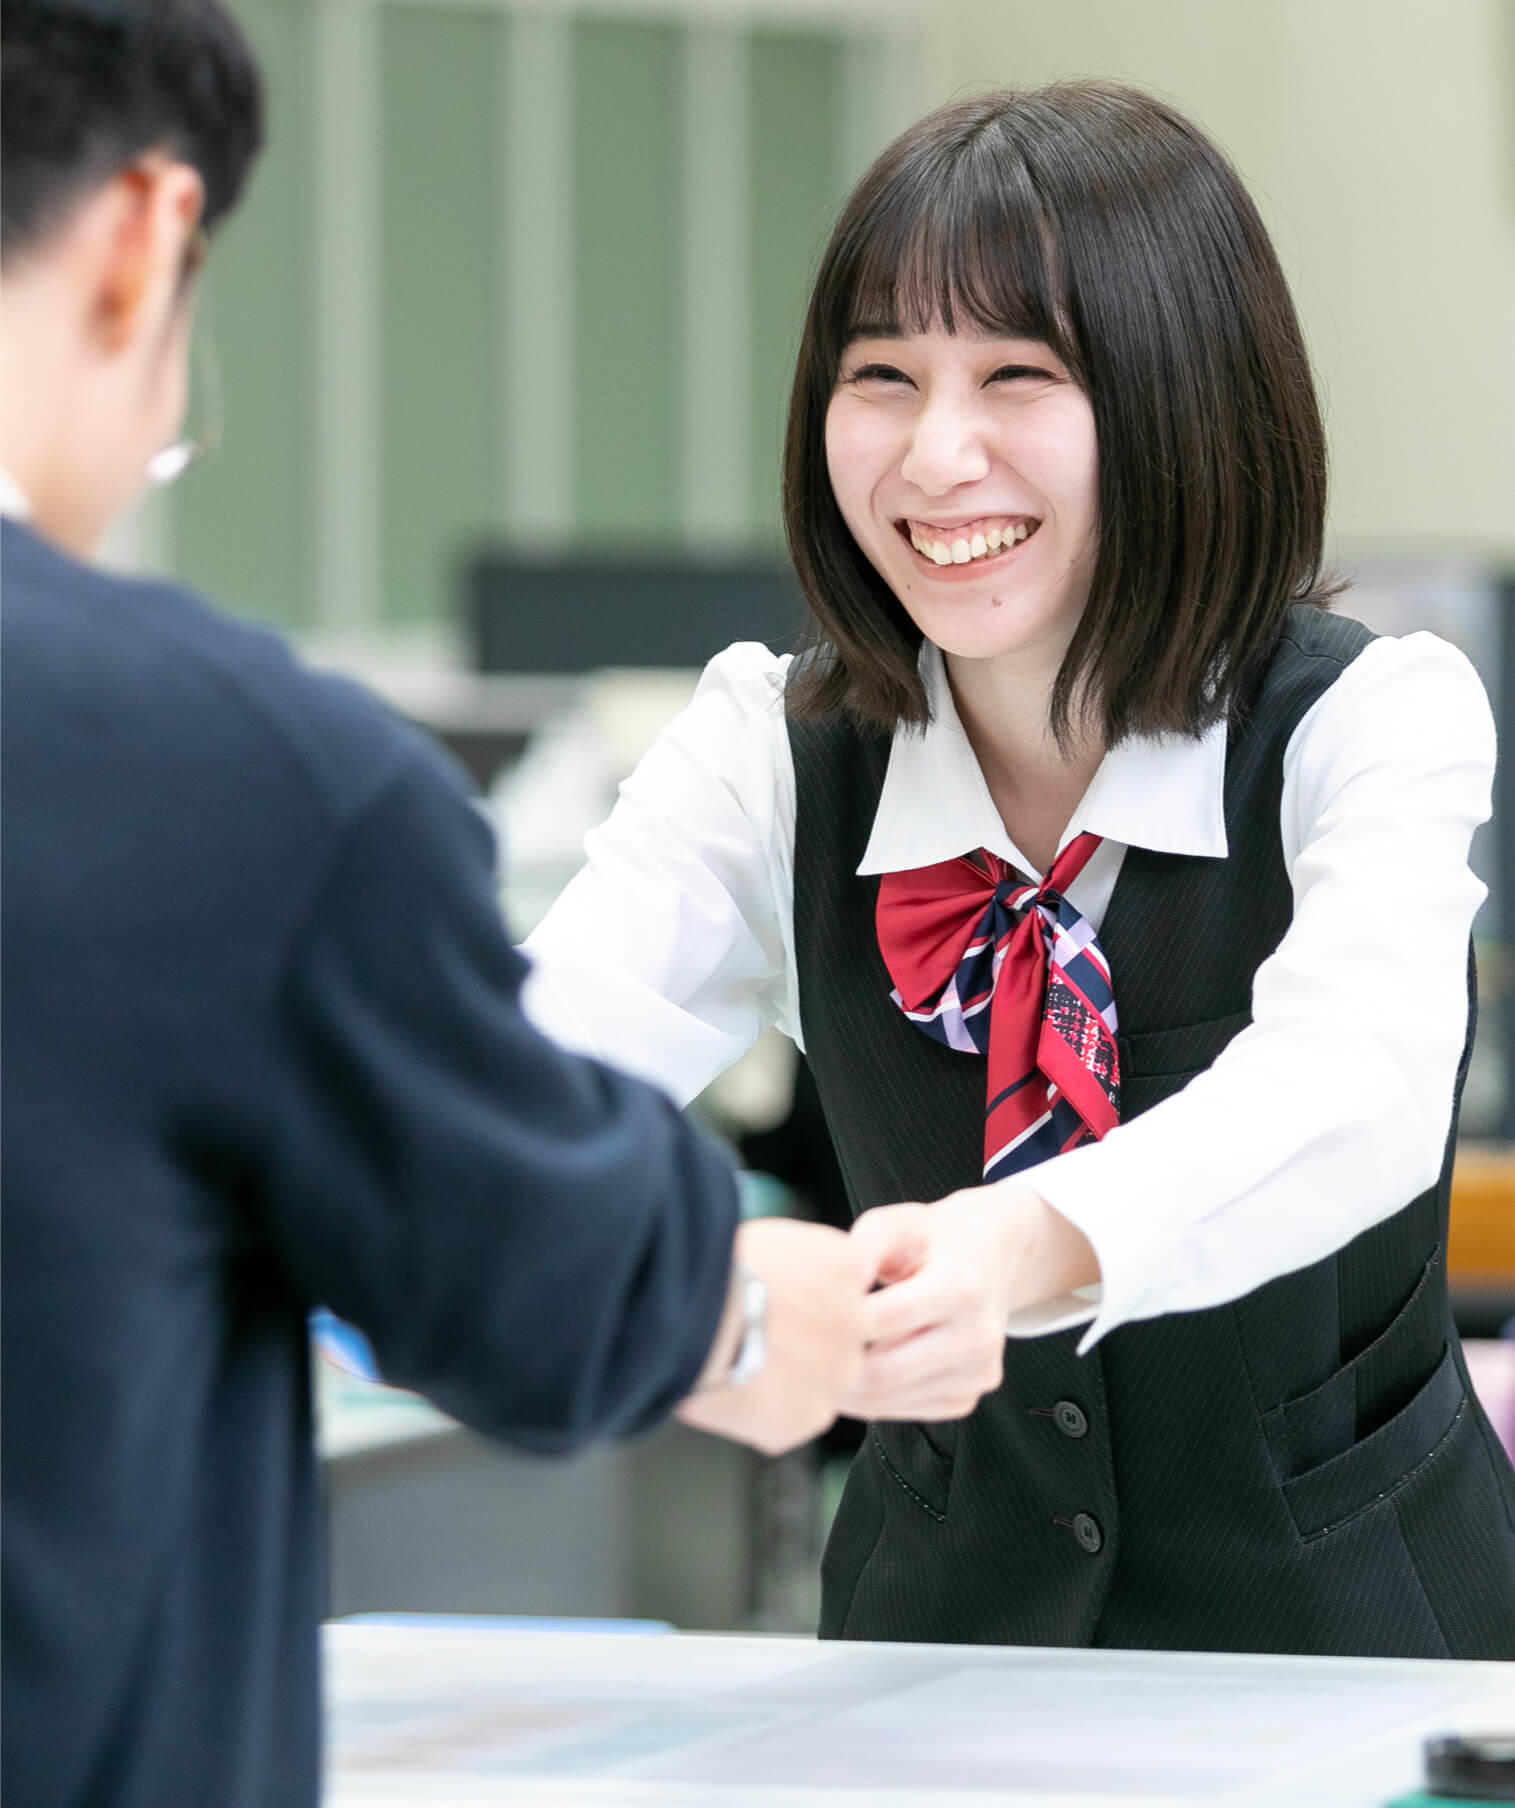 窓口で笑顔で接客をする長野県信連貯金為替の女性職員